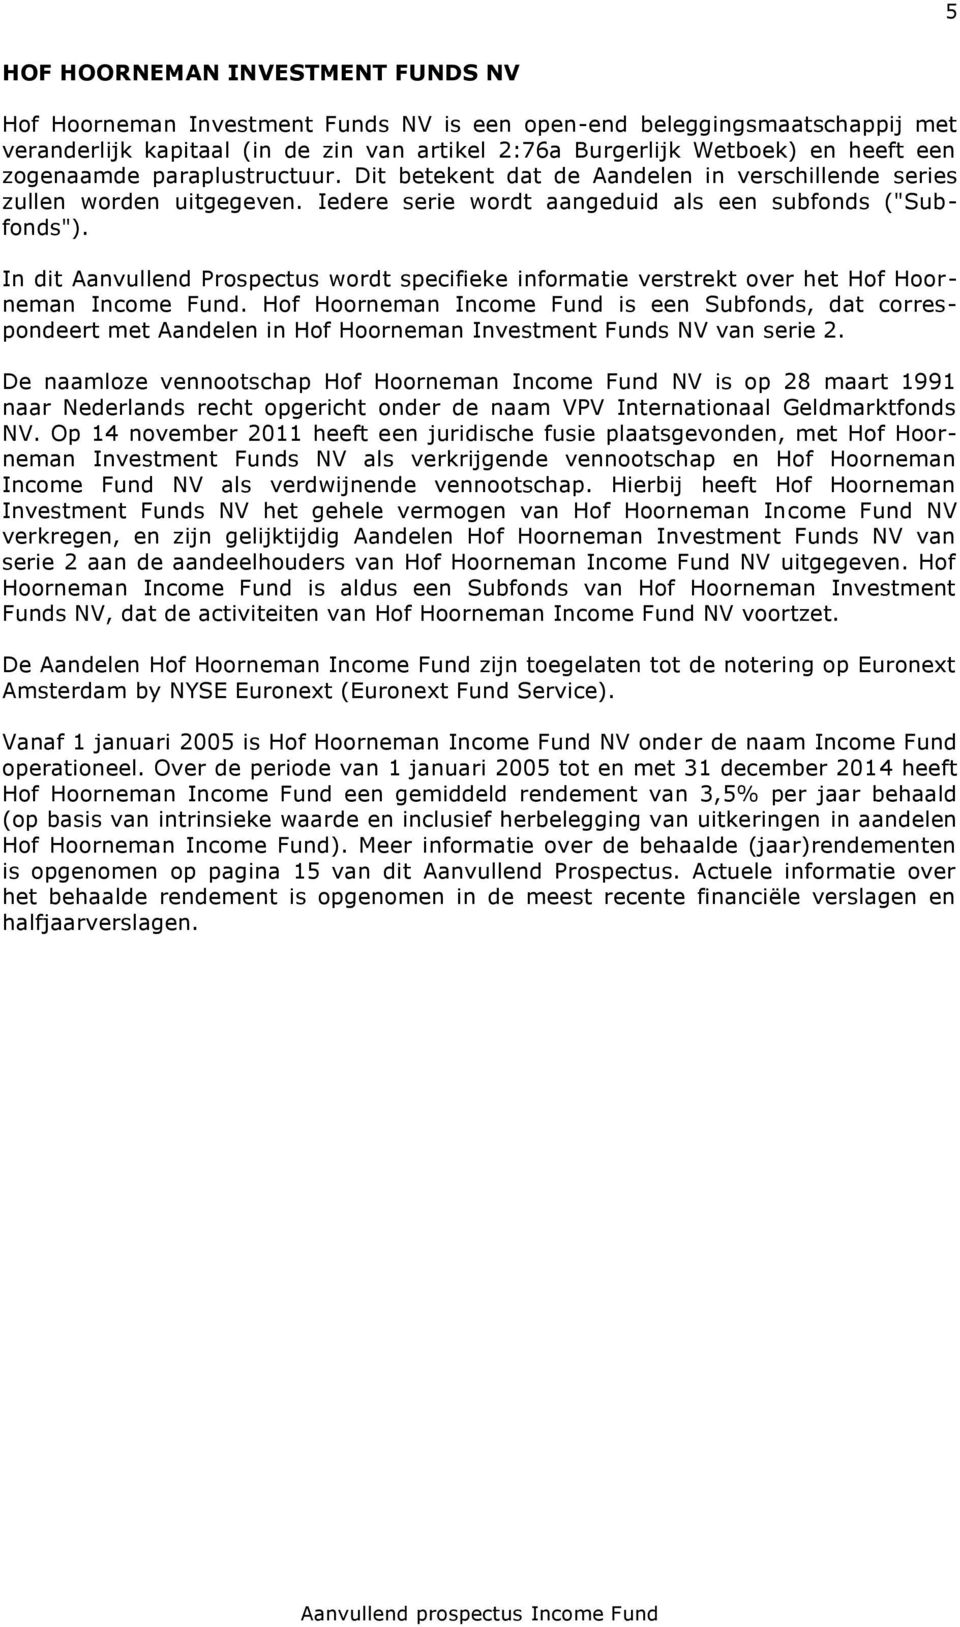 In dit Aanvullend Prospectus wordt specifieke informatie verstrekt over het Hof Hoorneman Income Fund.